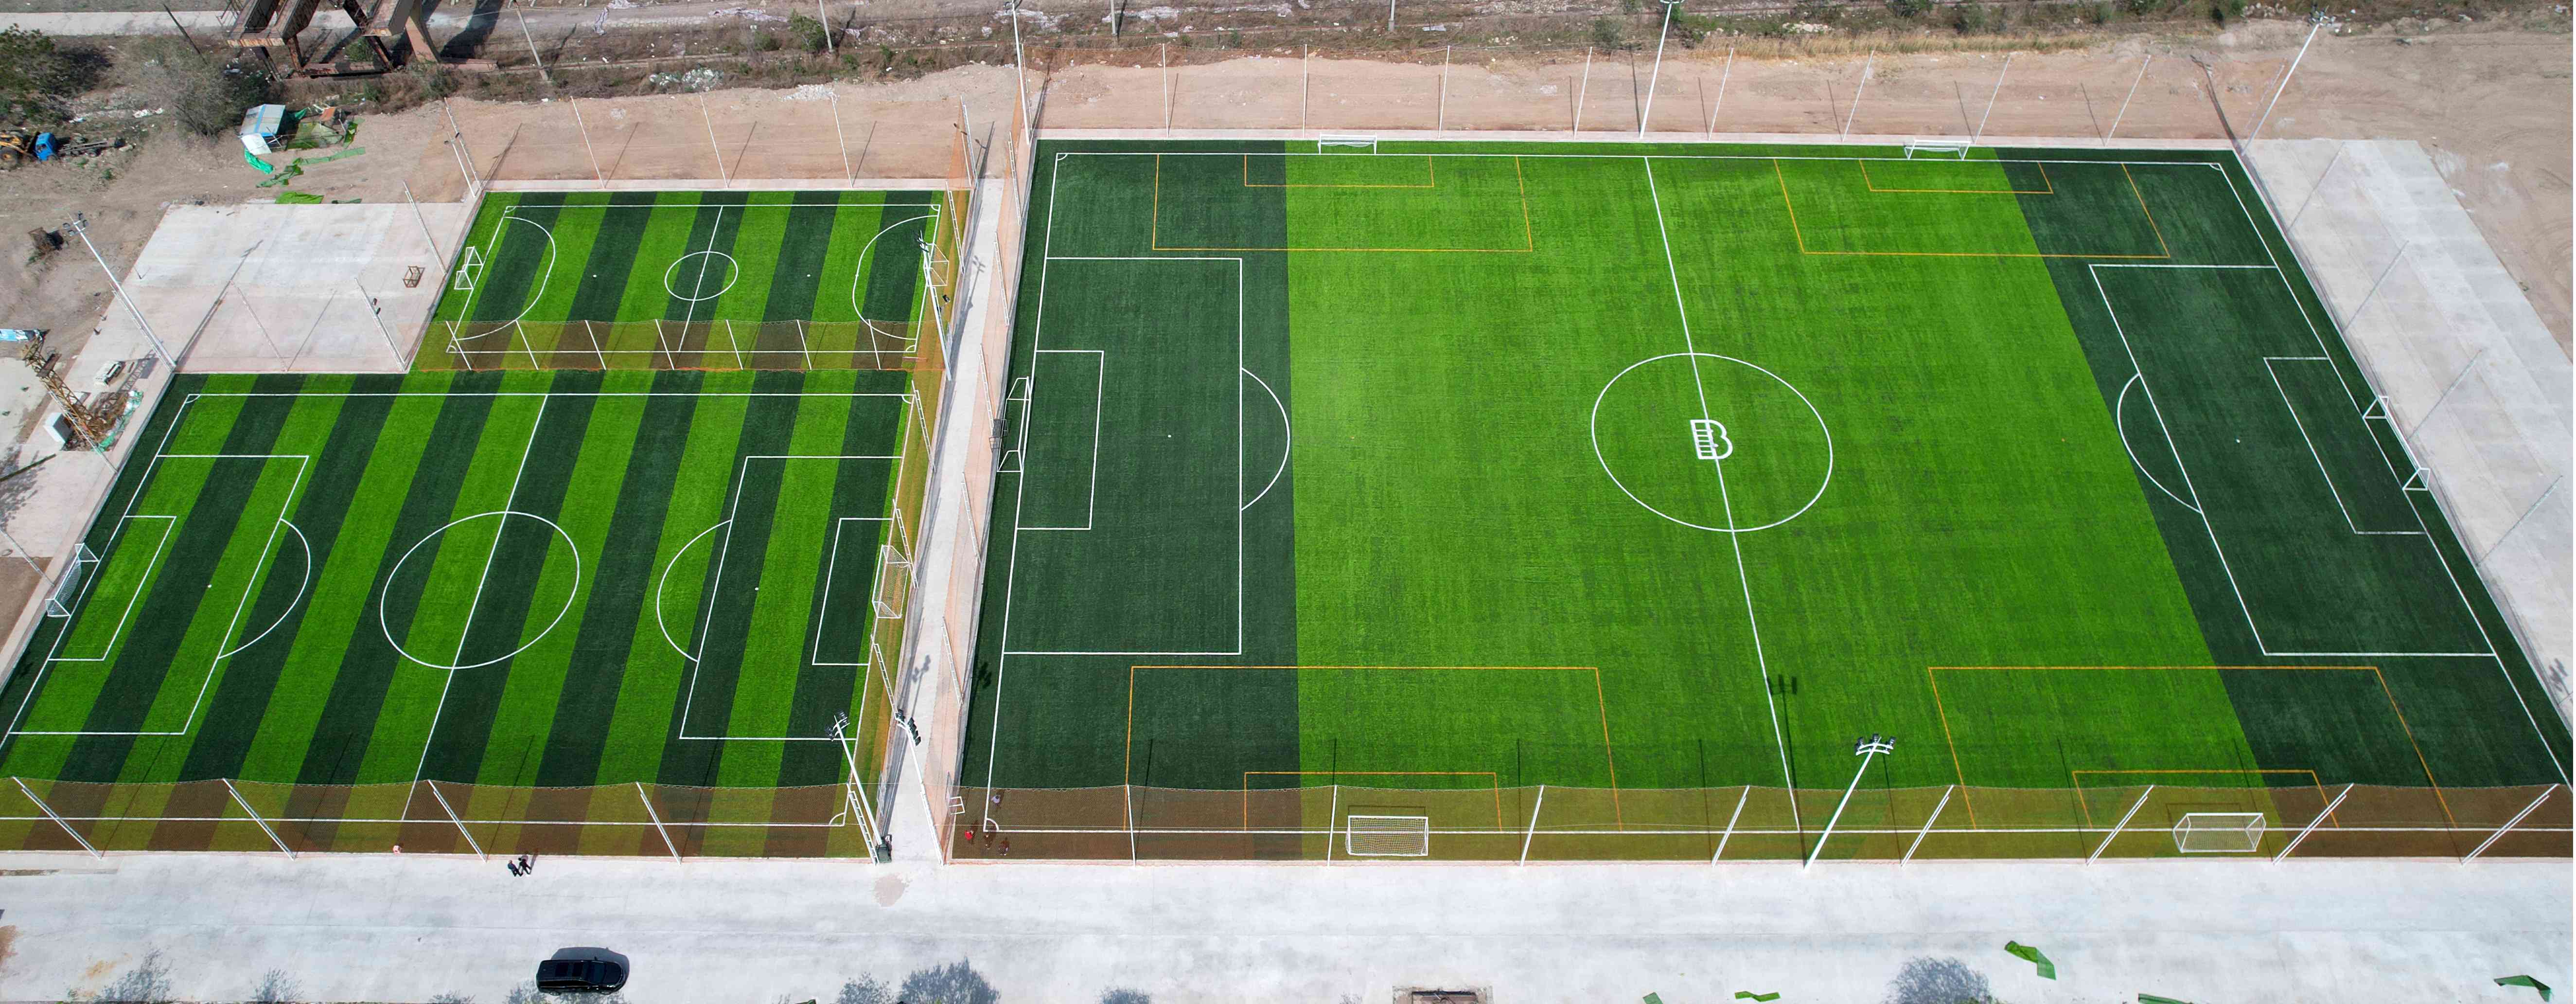 天津B站体育小镇人造草坪足球场全部圆满竣工